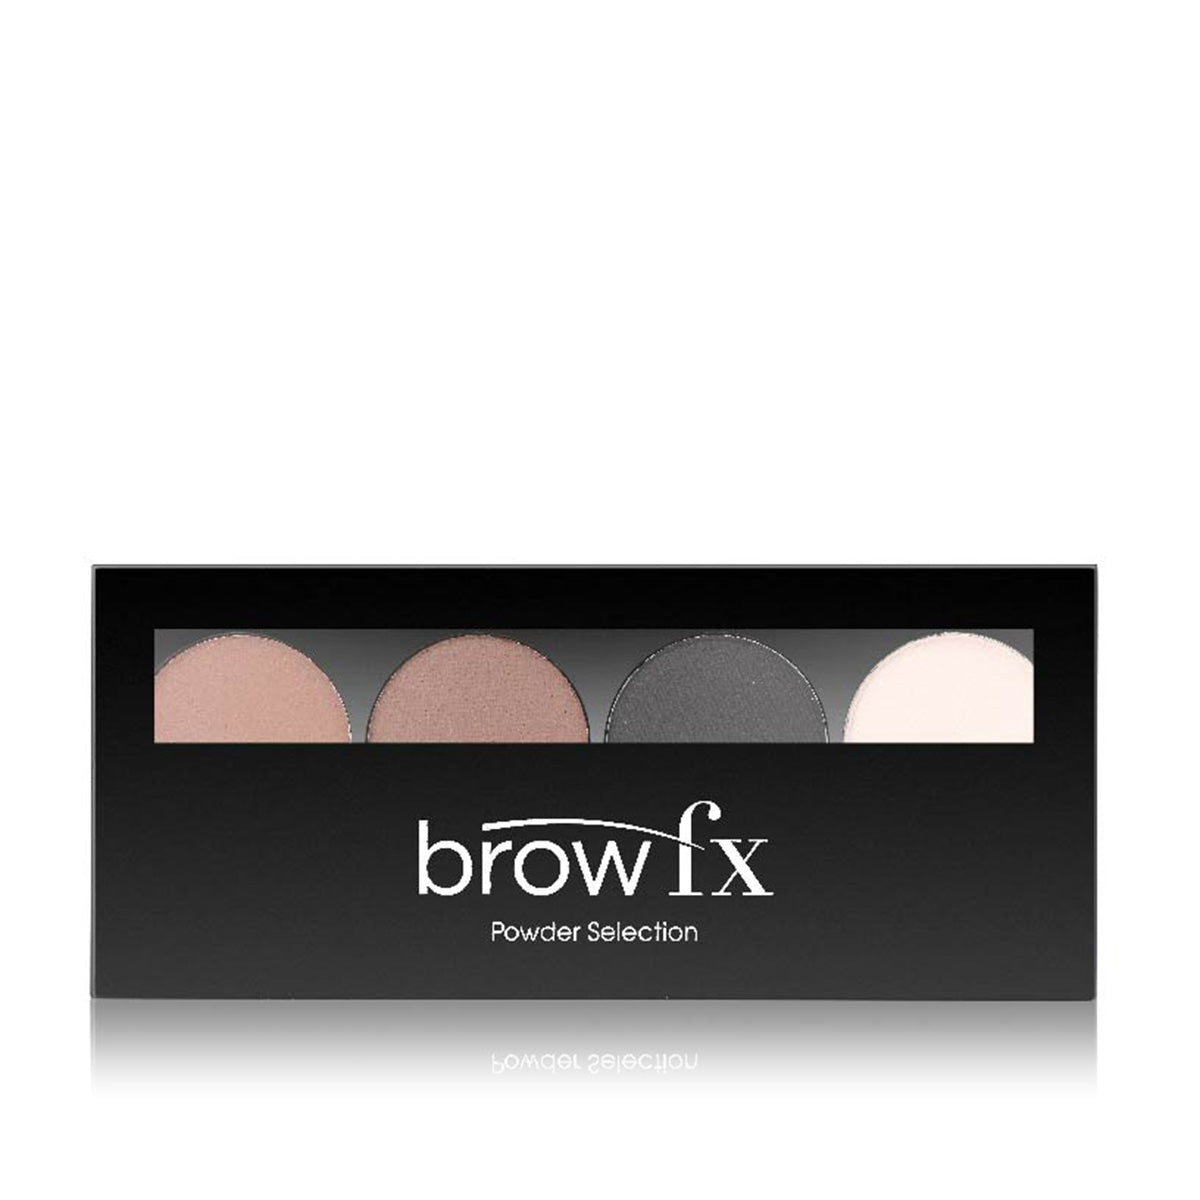 Hi Brow FX Powder Collection (Medium - Dark)